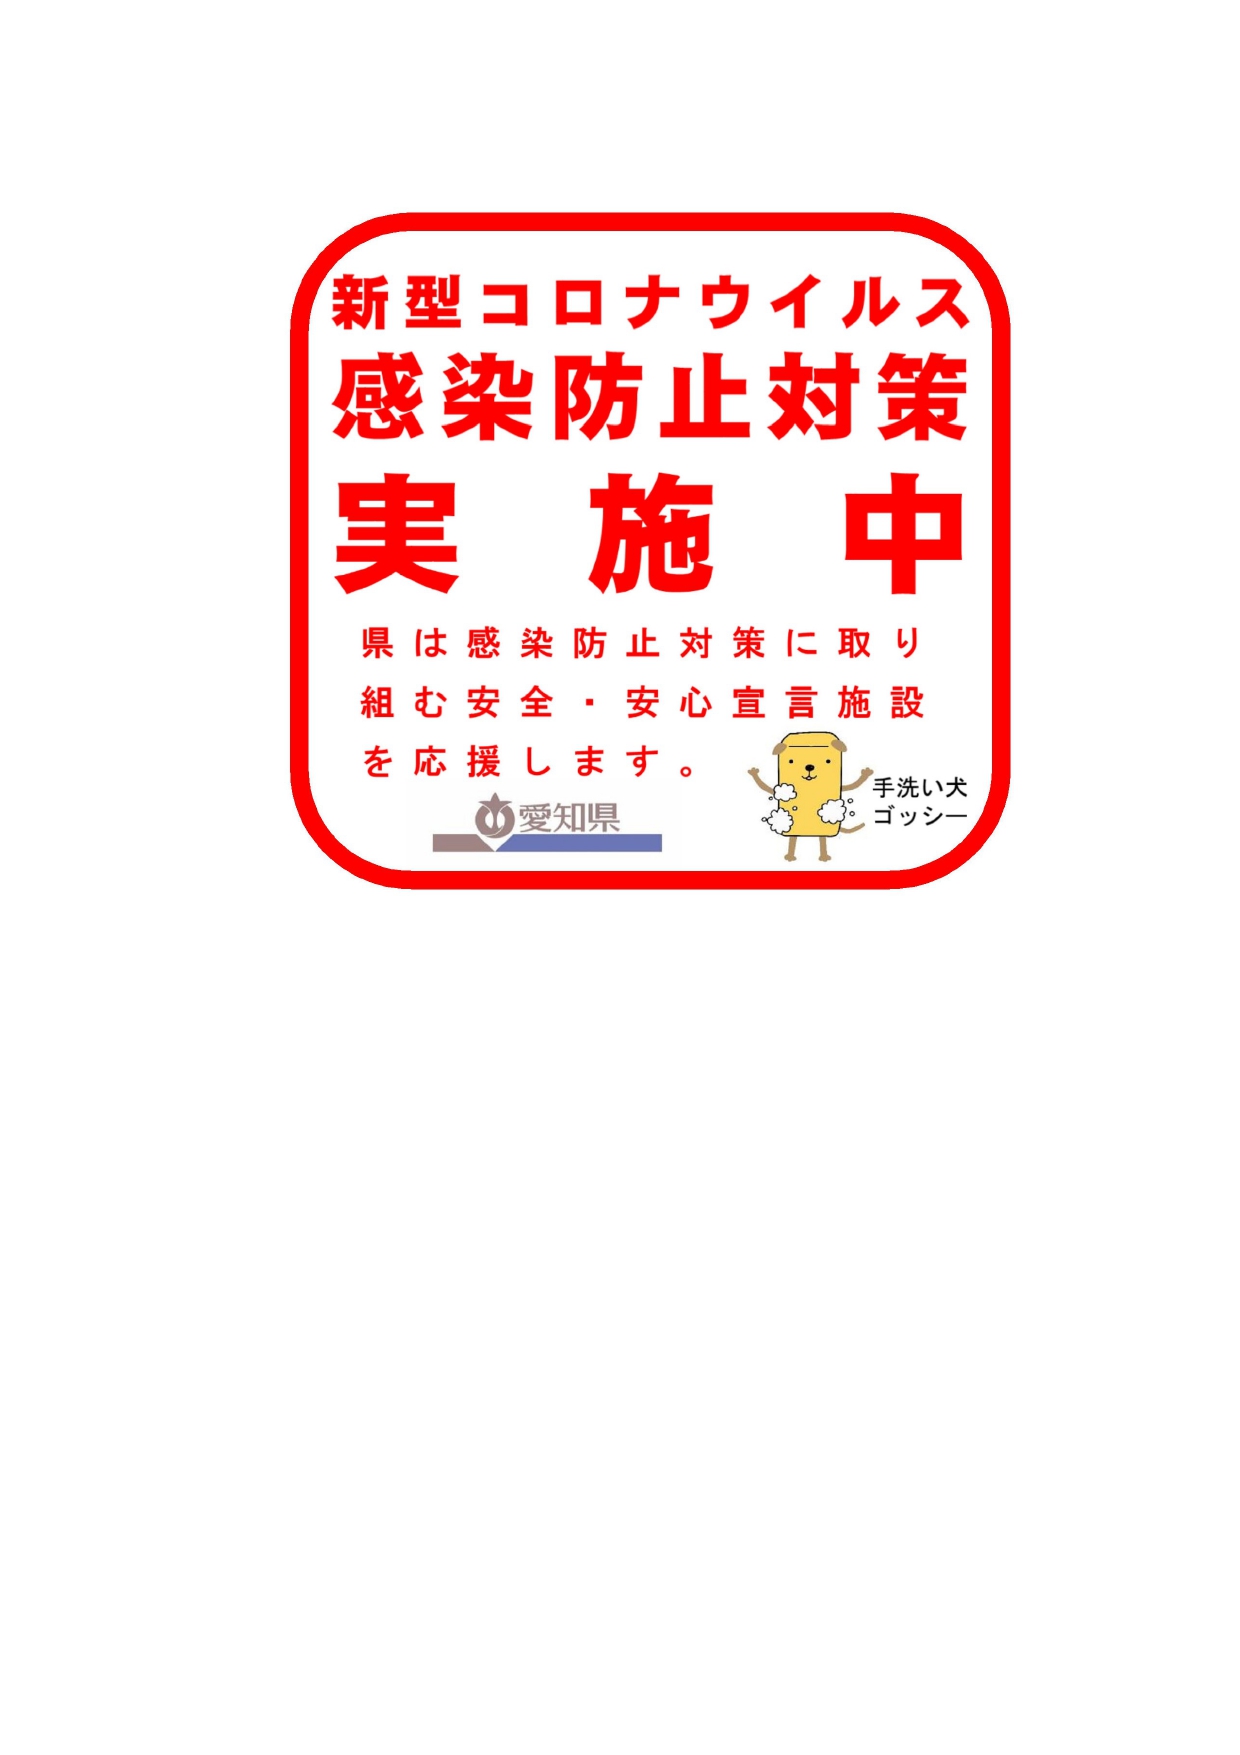 愛知県 新型コロナウィルス感染防止対策実施中